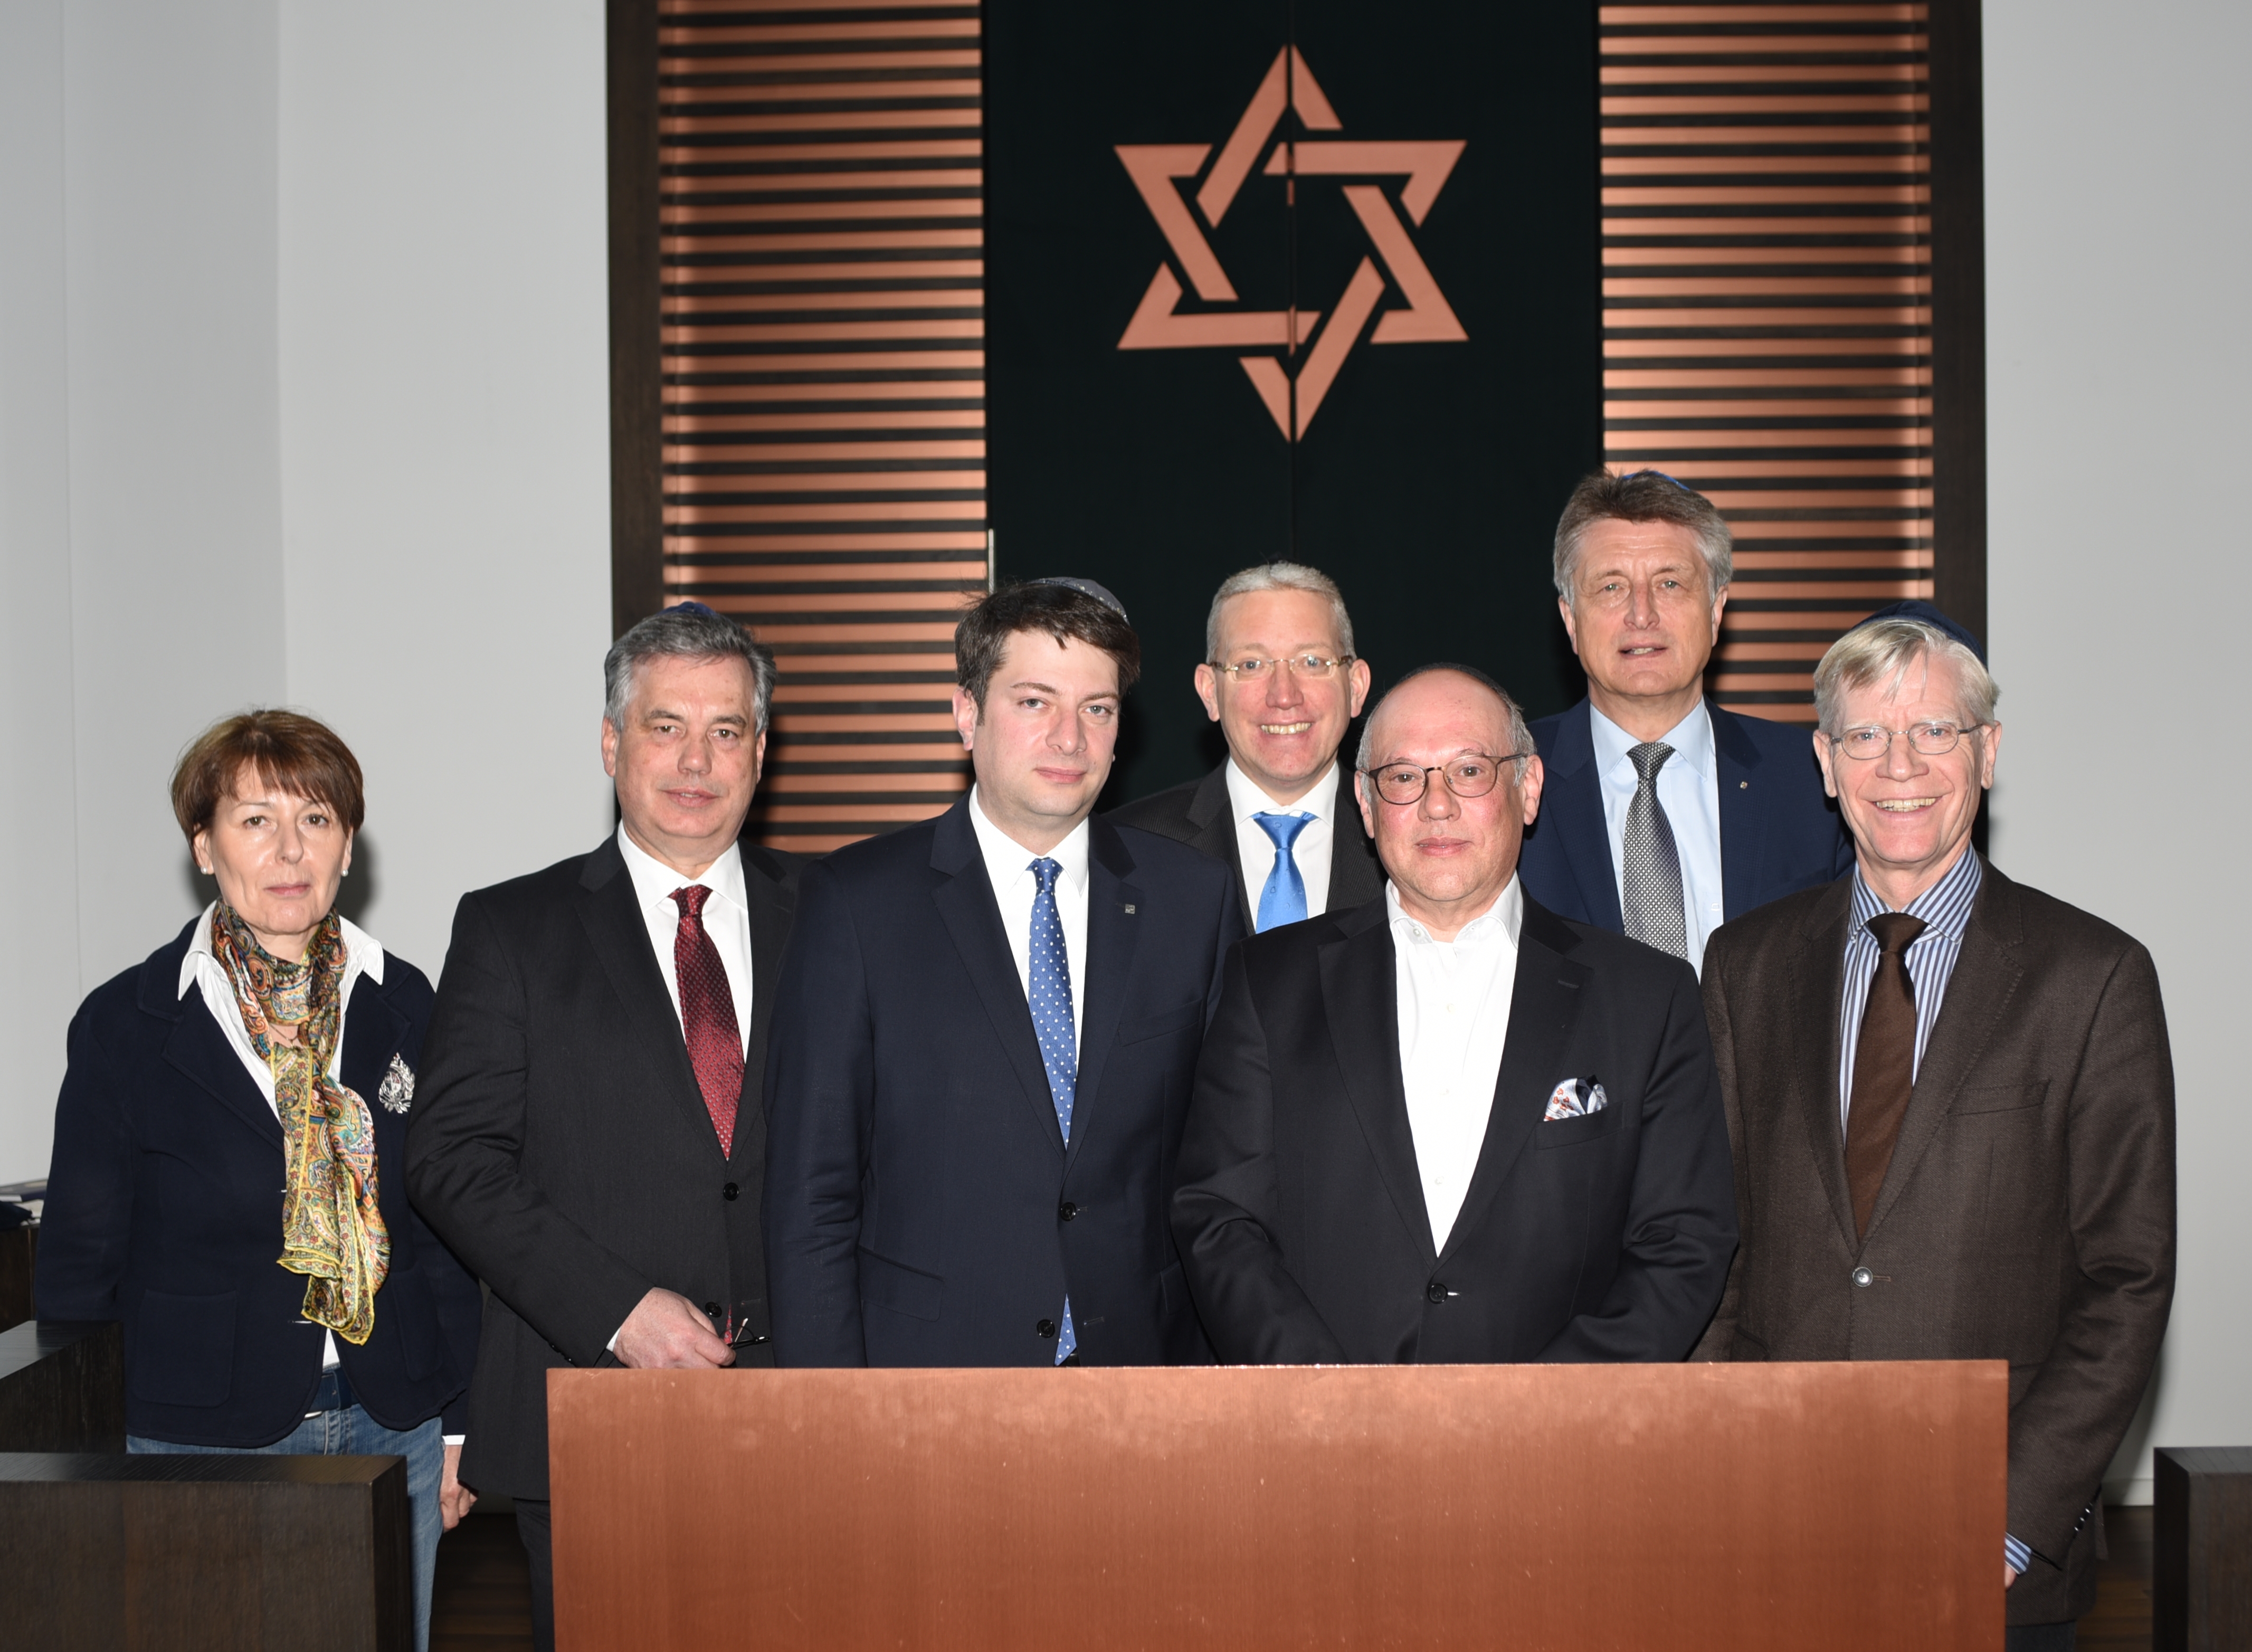 Besuch der Jüdischen Gemeinde in Osnabrück mit der Kollegin und den Kollegen der CDU-Landtagsfaktion aus dem Osnabrücker Land im Jahr 2015.